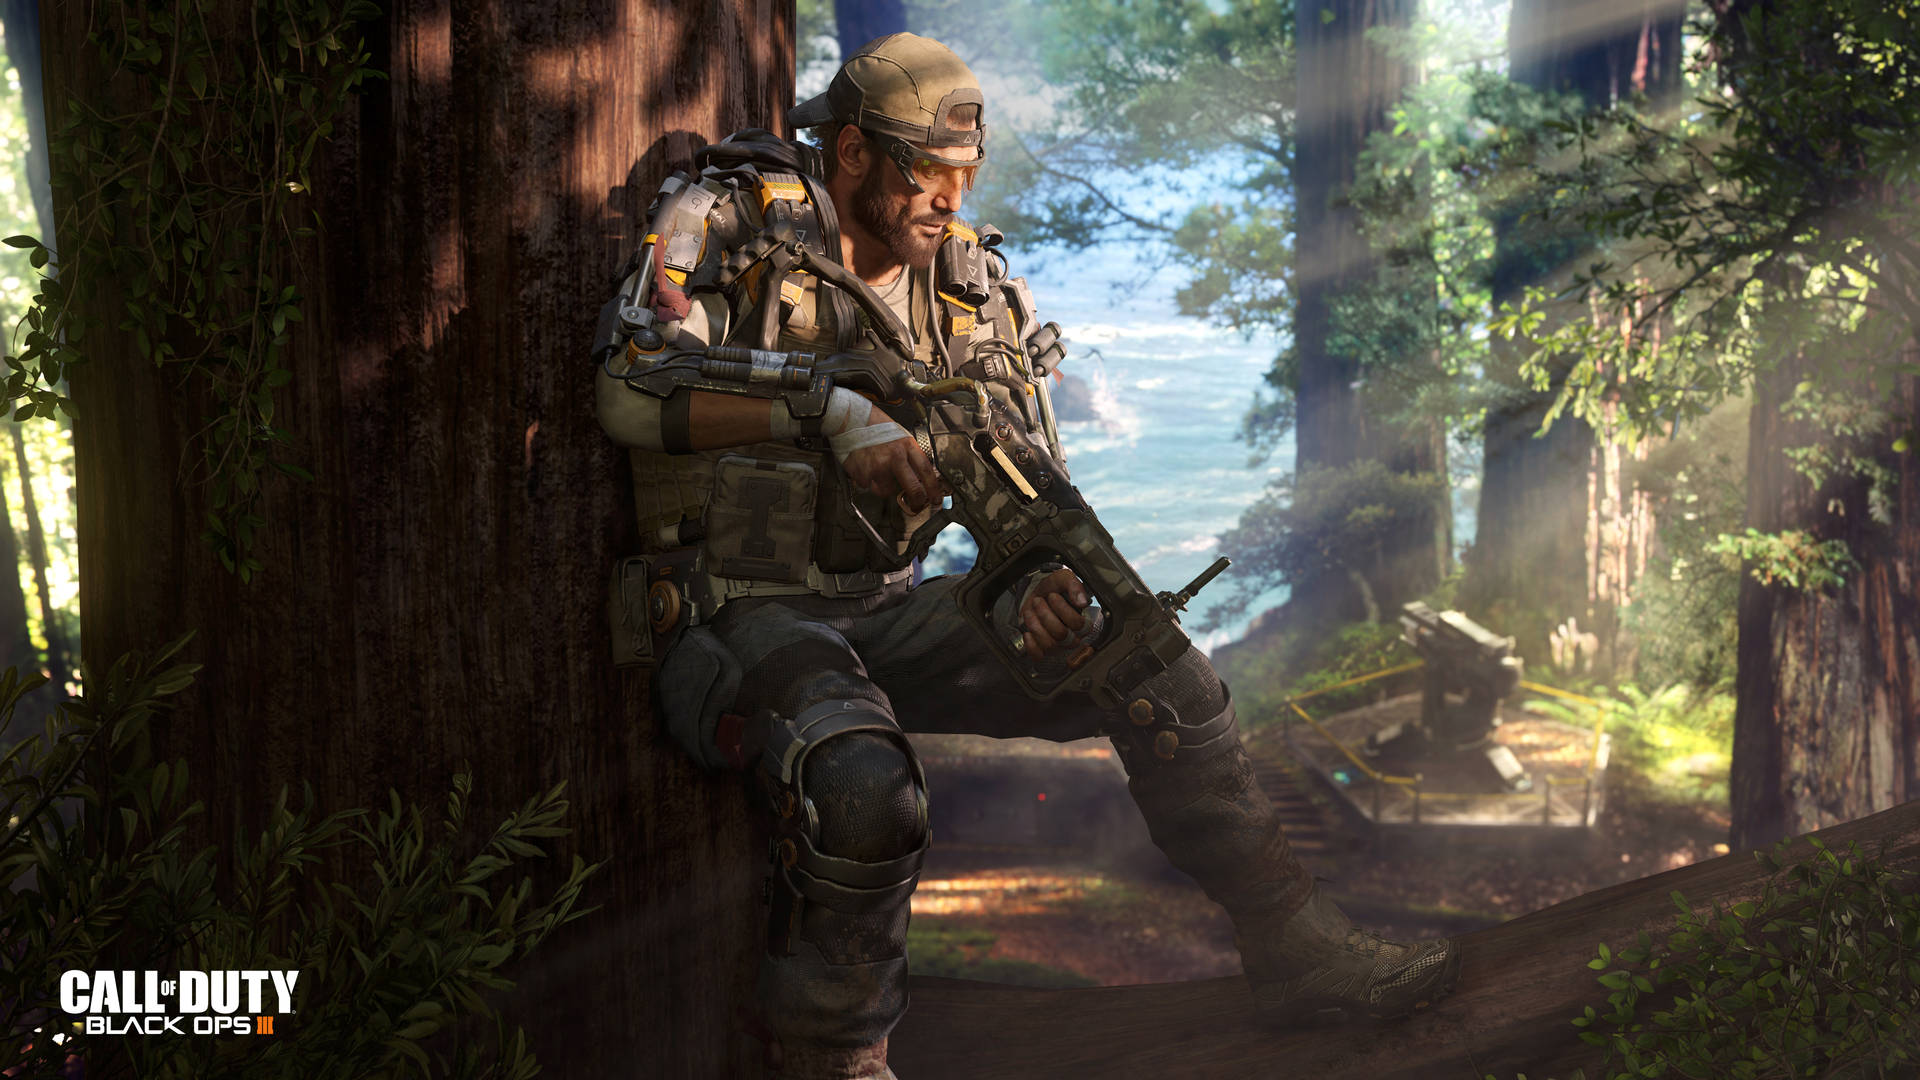 Utmanövrera,spela Ut Och Överlev I Call Of Duty Black Ops 3 På Din Datorskärm Eller Mobila Bakgrundsbild. Wallpaper